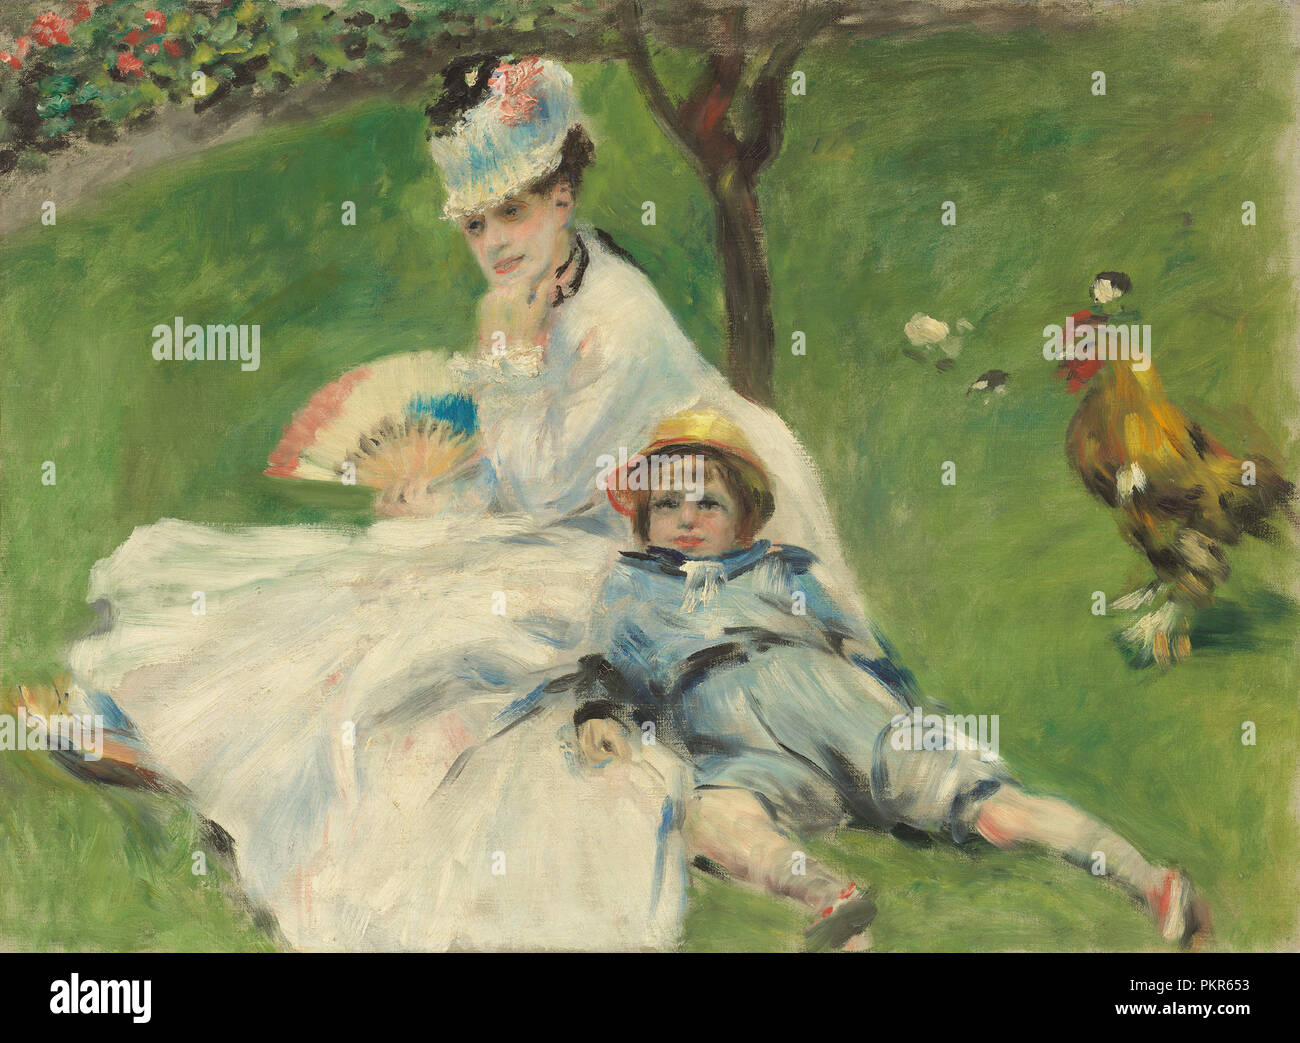 Madame Monet et son fils. En date du : 1874. Dimensions : hors tout : 50,4 x 68 cm (19 13/16 x 26 3/4 in.) : 77,4 x 95,5 encadré x 11,4 cm (30 1/2 x 37 5/8 x 4 1/2 in.). Médium : Huile sur toile. Musée : National Gallery of Art, Washington DC. Auteur : Auguste Renoir. Banque D'Images